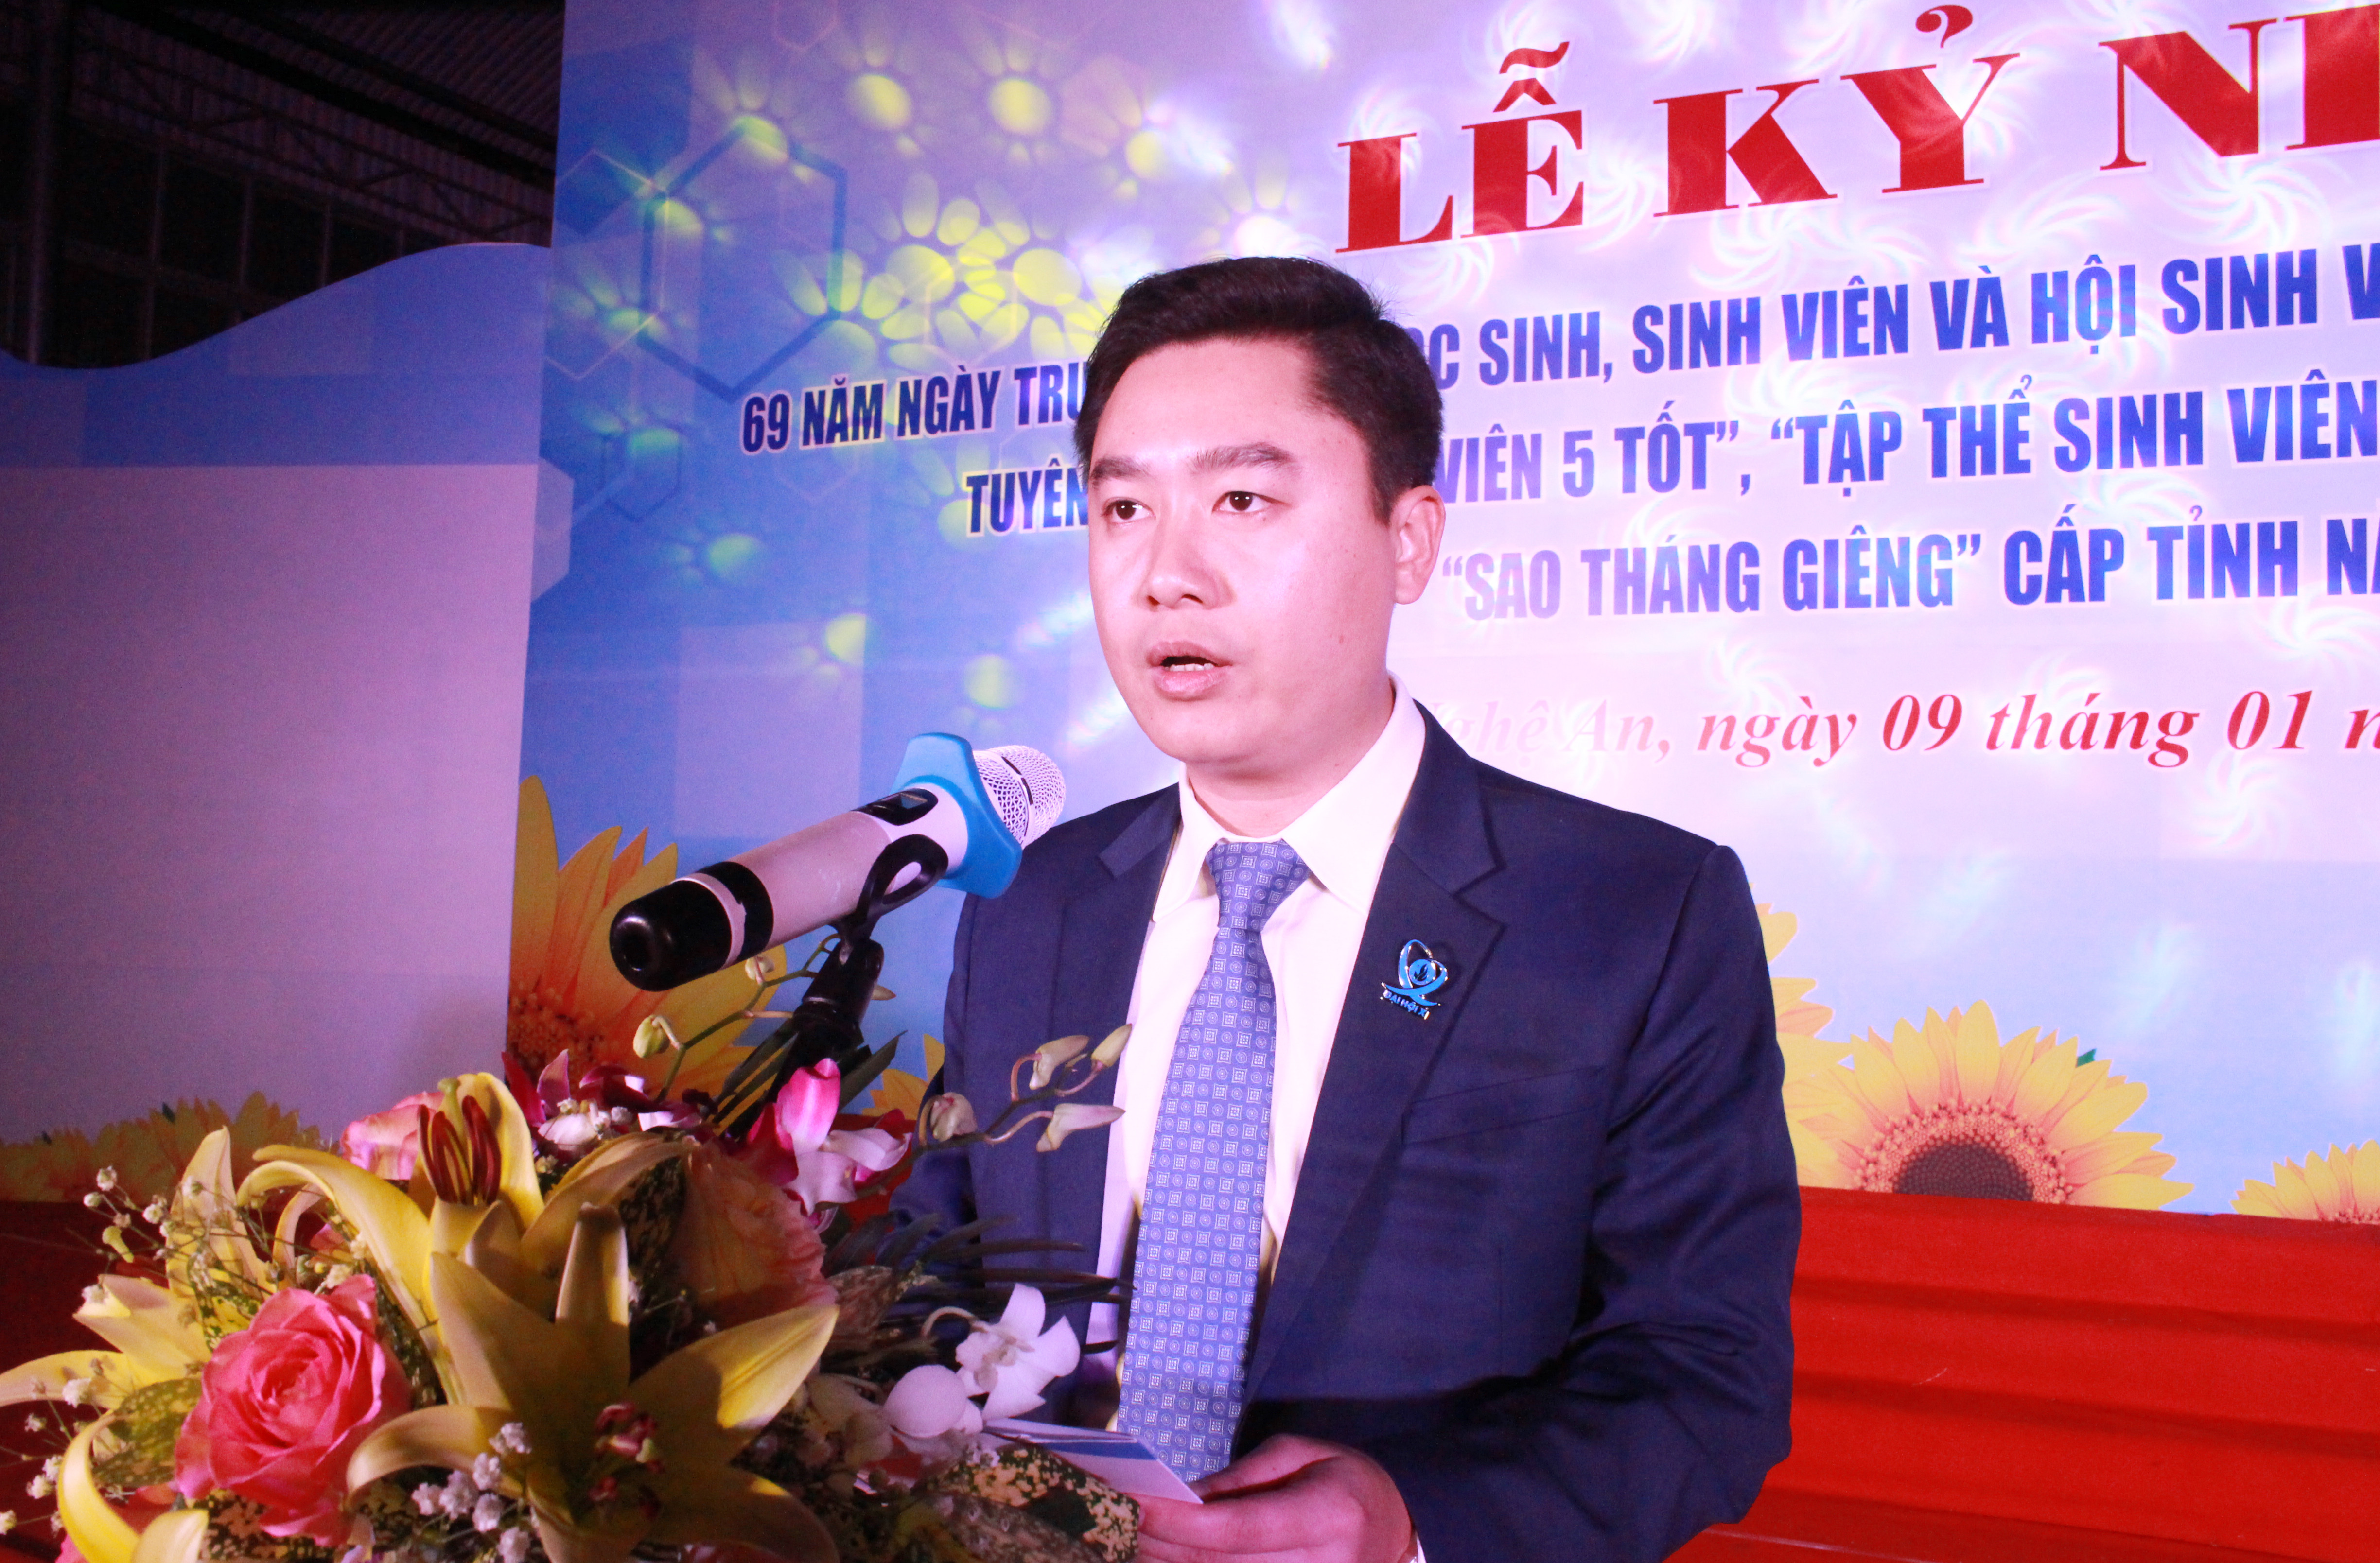 Phó Bí thư Tỉnh đoàn, Chủ tịch Hội sinh viên tỉnh - Lê Văn Lương phát biểu tại buổi lễ. Ảnh: Phương Thúy